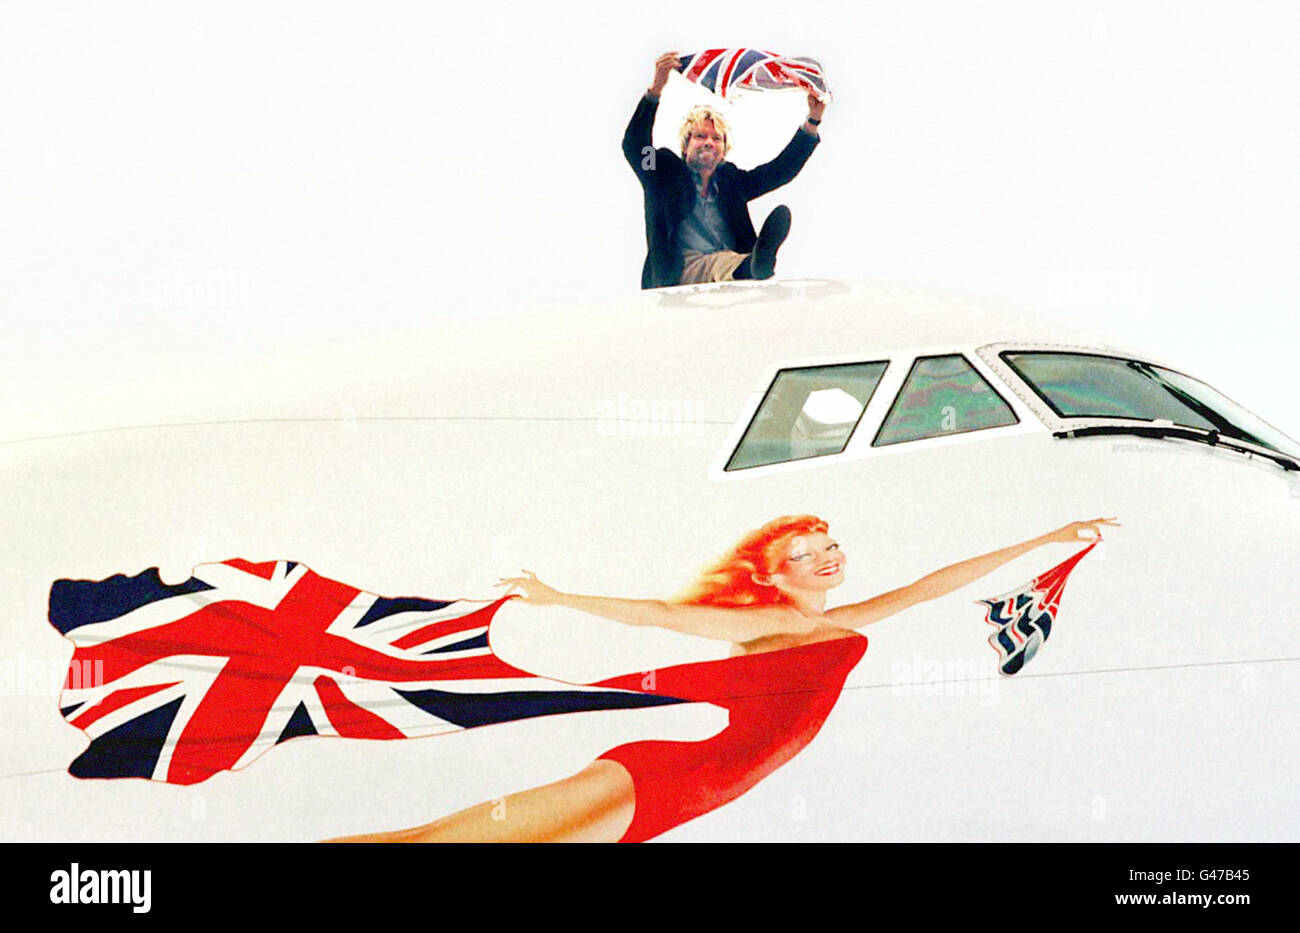 Jungfrau-Vorsitzende Richard Branson stellt für die Medien bei einem Fototermin am Flughafen Heathrow heute (Donnerstag). Virgin Atlantic heute (Donnerstag) hob die Fahne Gedroppt von British Airways und und gliederte sie in sein Logo Scarlet Lady. BA nahm im vergangenen Monat die Anschluß-Markierungsfahne der Leitwerke seiner Flugzeuge außer Concorde ab und ersetzte sie durch eine Reihe von weltweiten Gemälde. Foto von Tim Ockenden/PA. PA-Geschichte-AIR-Flagge zu sehen Stockfoto